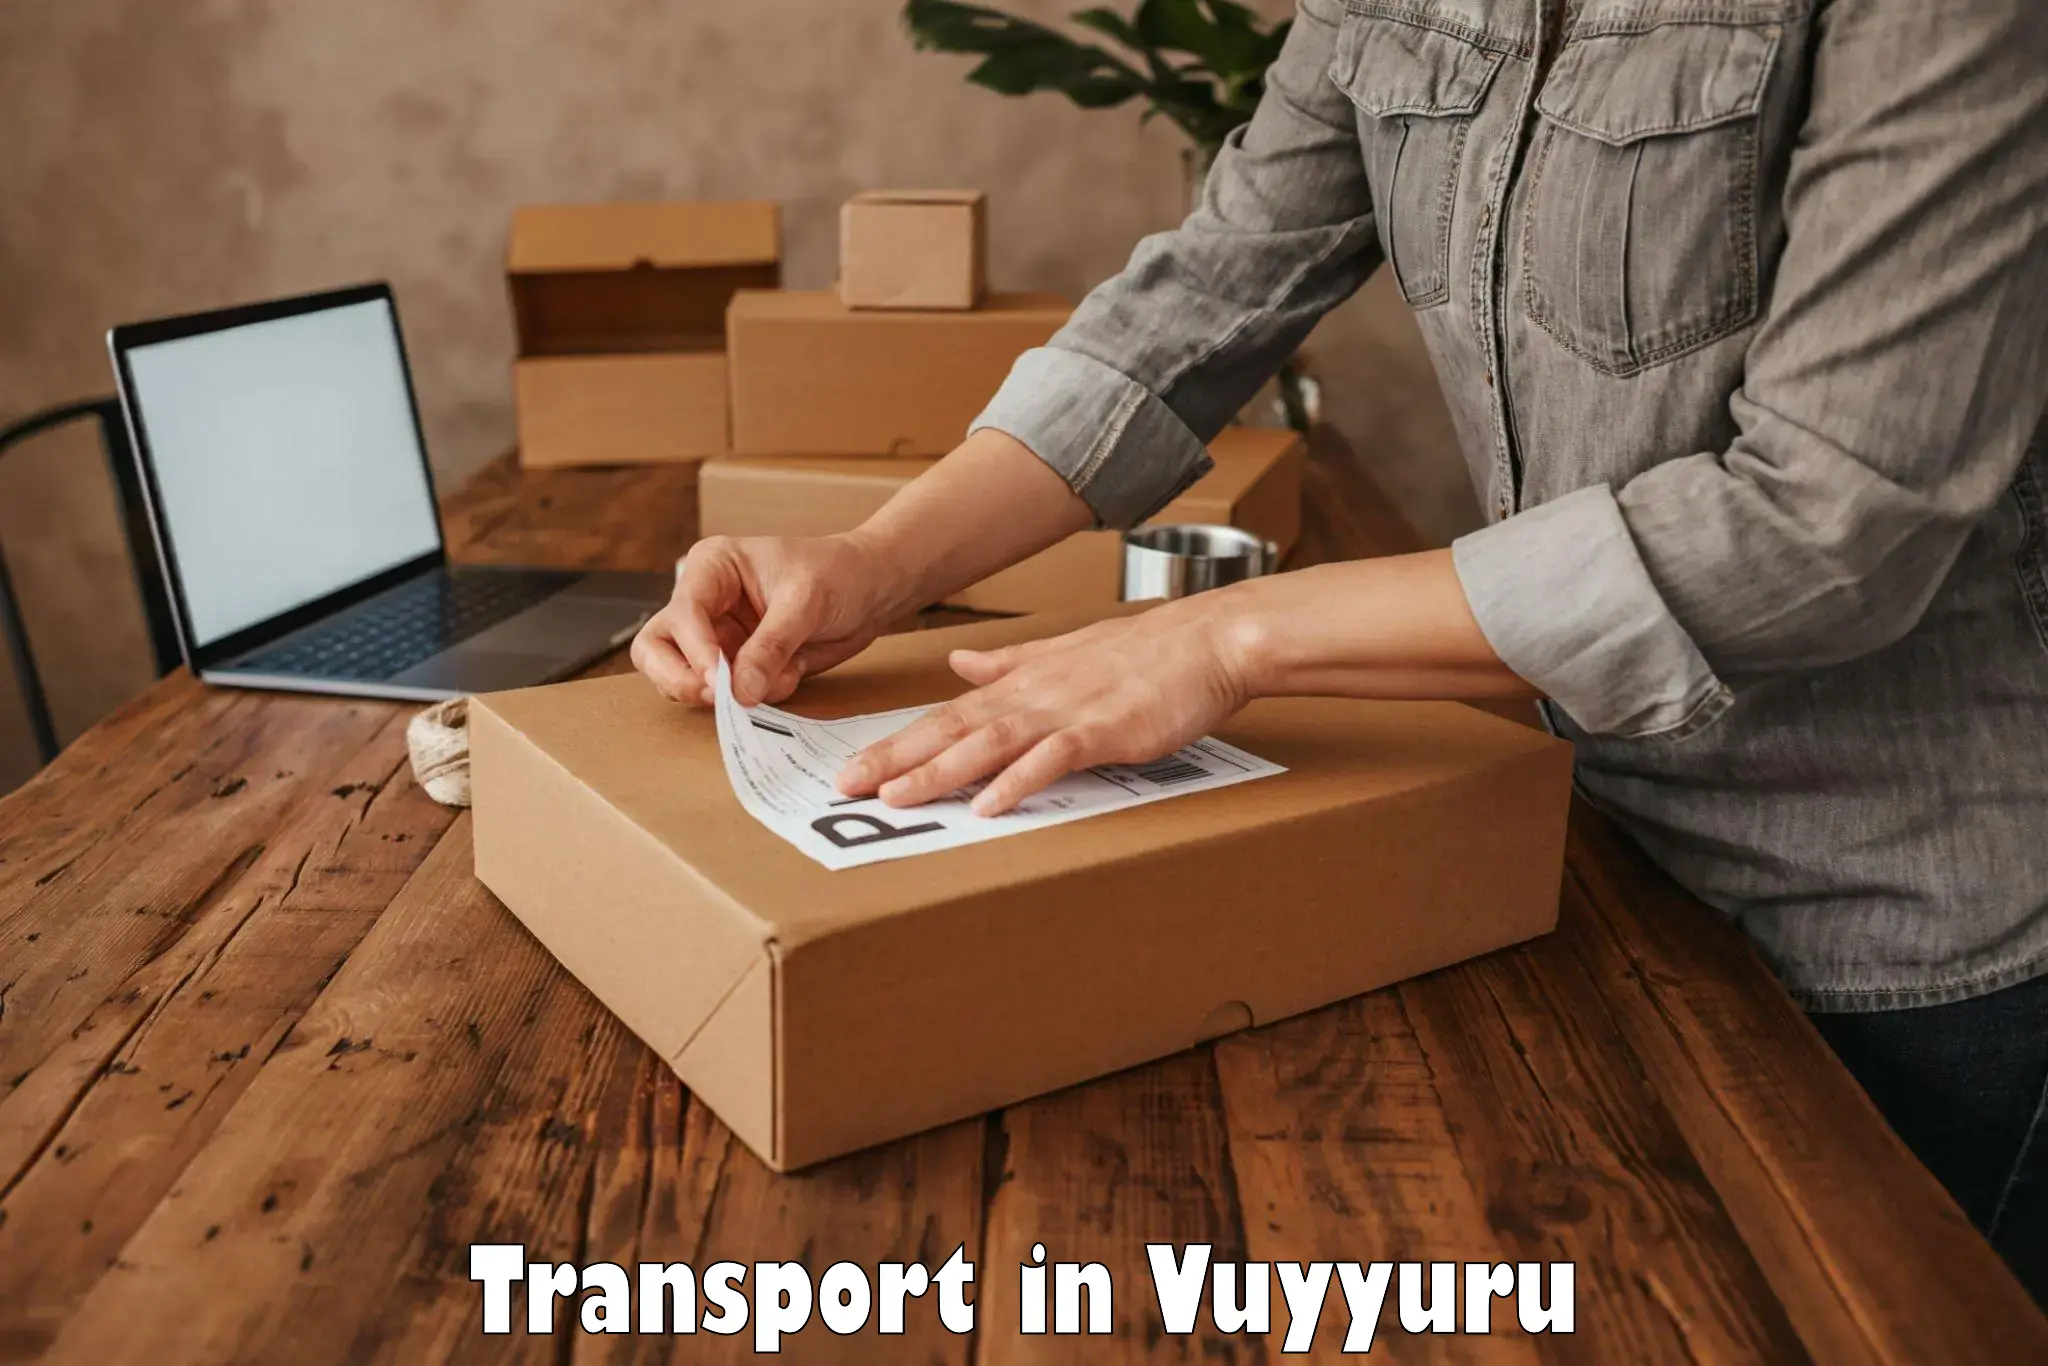 Interstate transport services in Vuyyuru